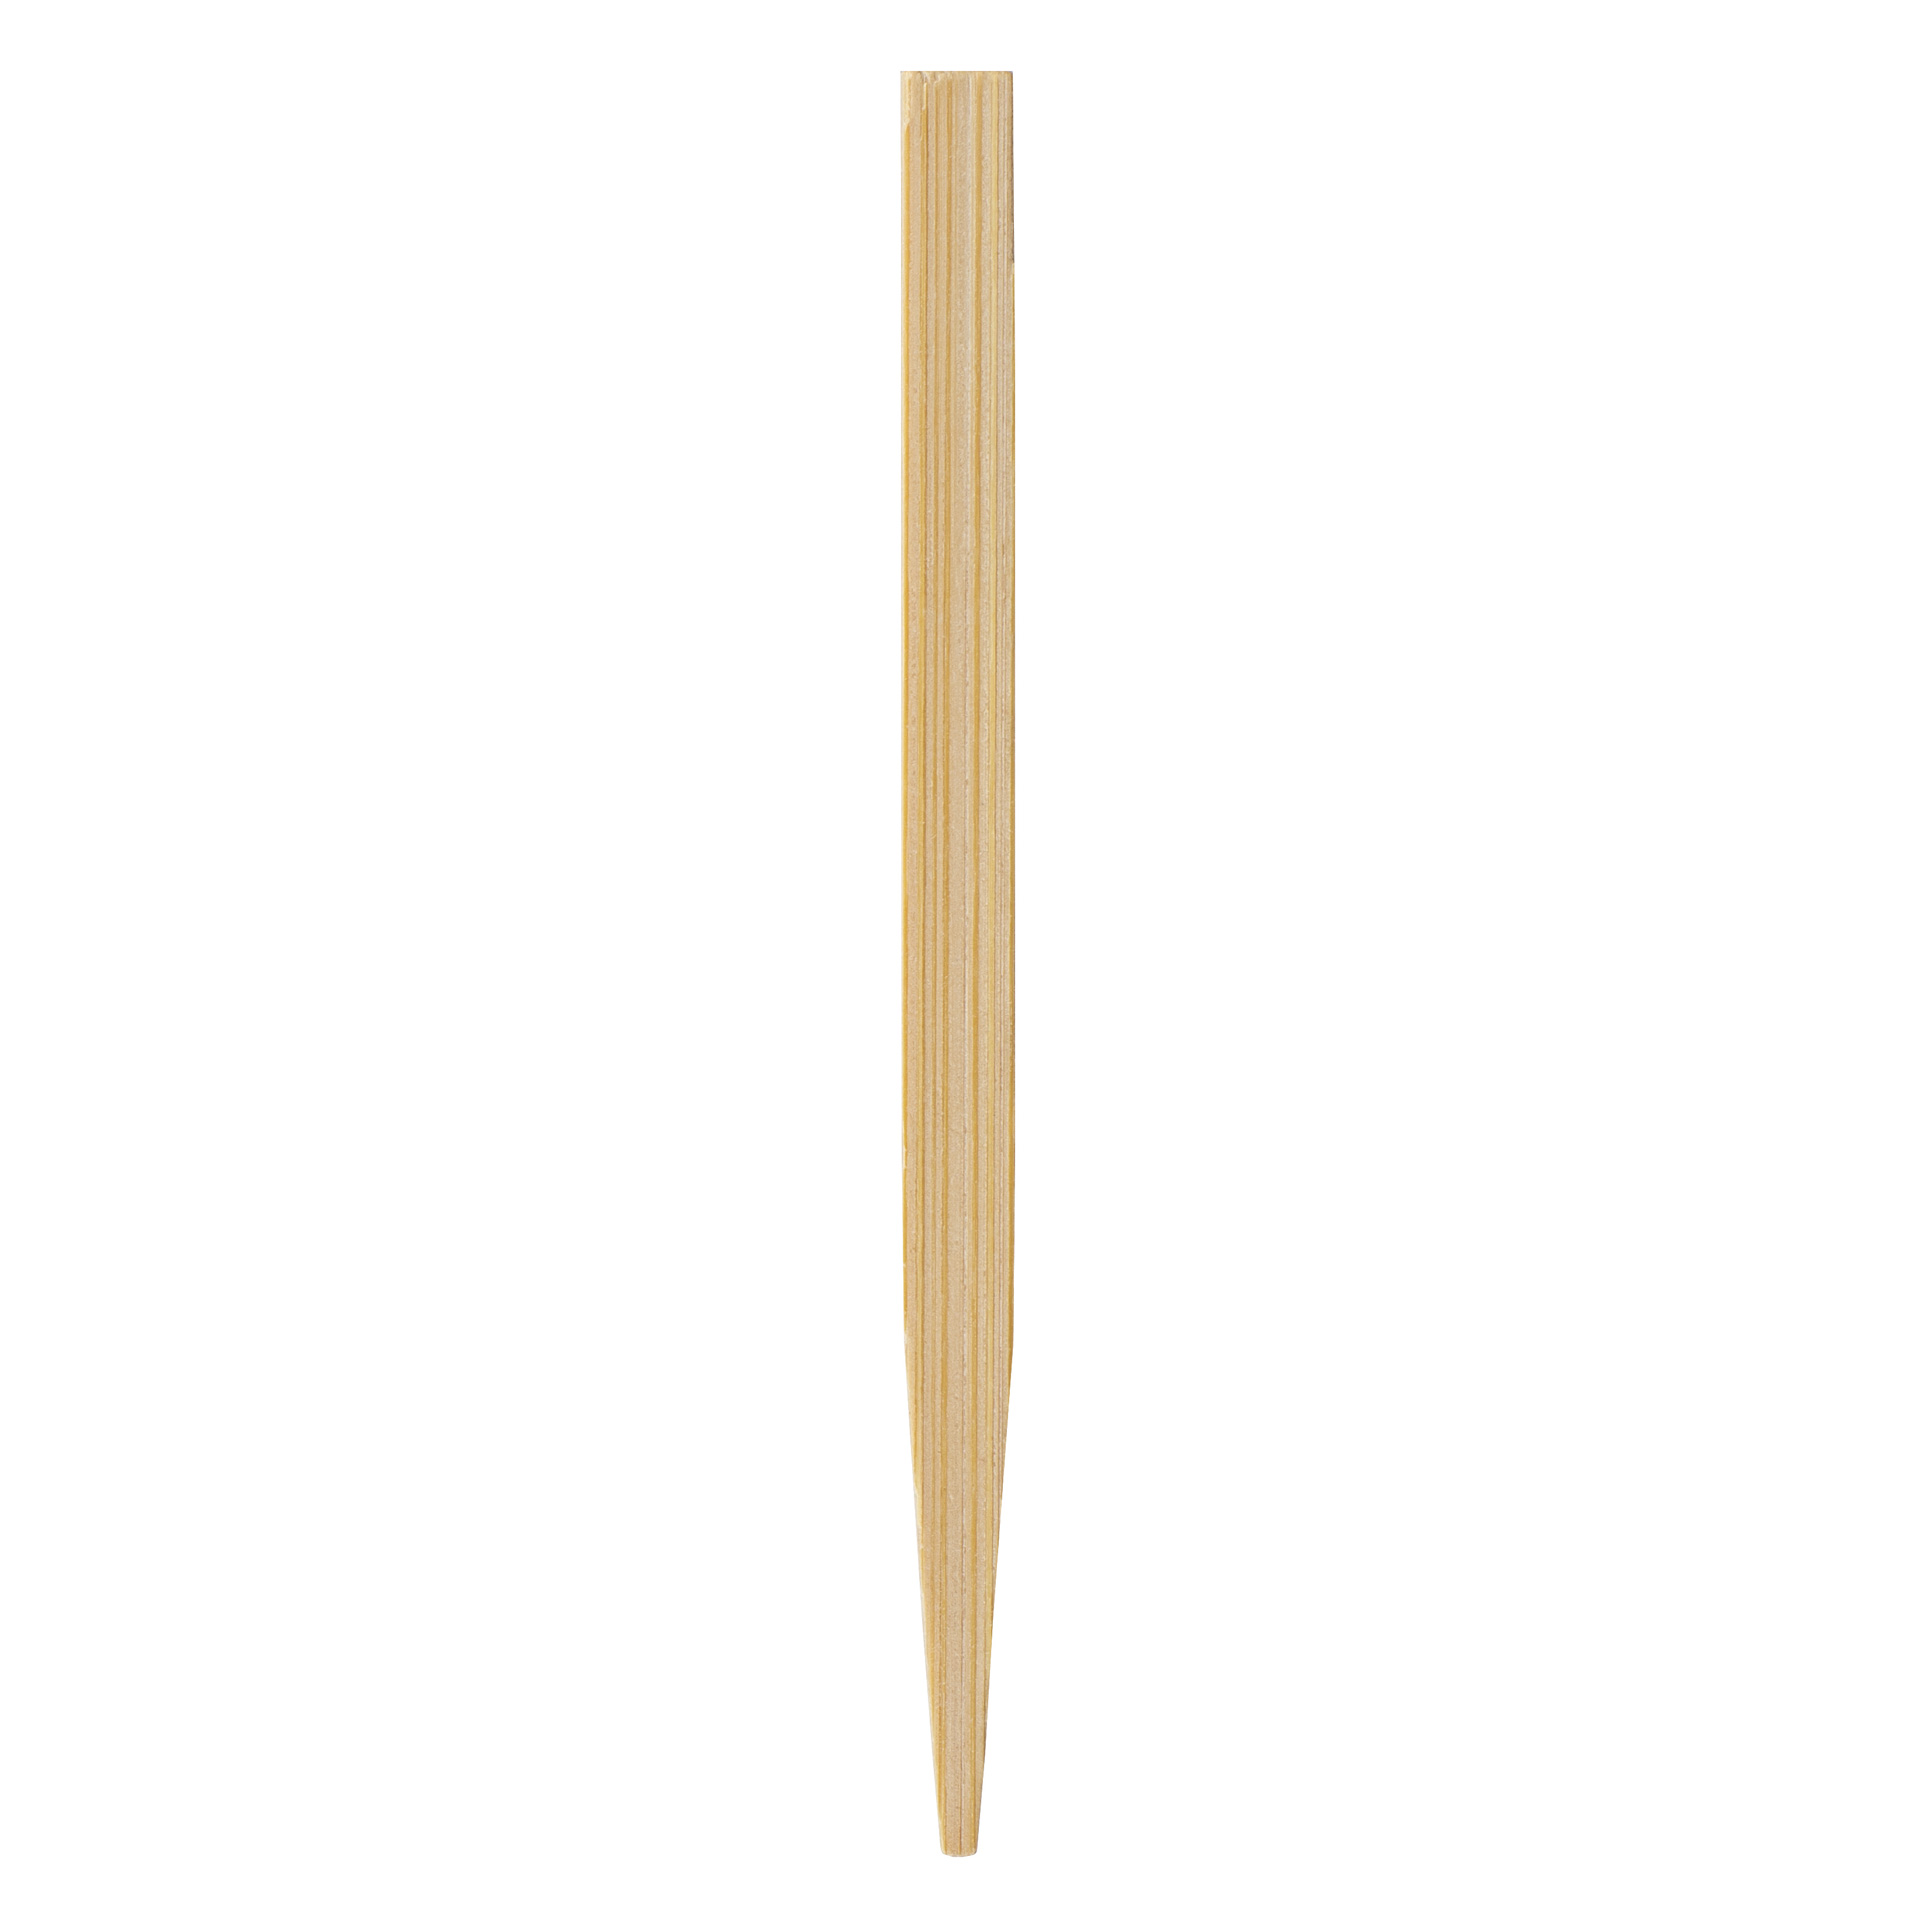 Patyczki bambusowe dł. 9 cm (op. 100 szt.) - VERLO 